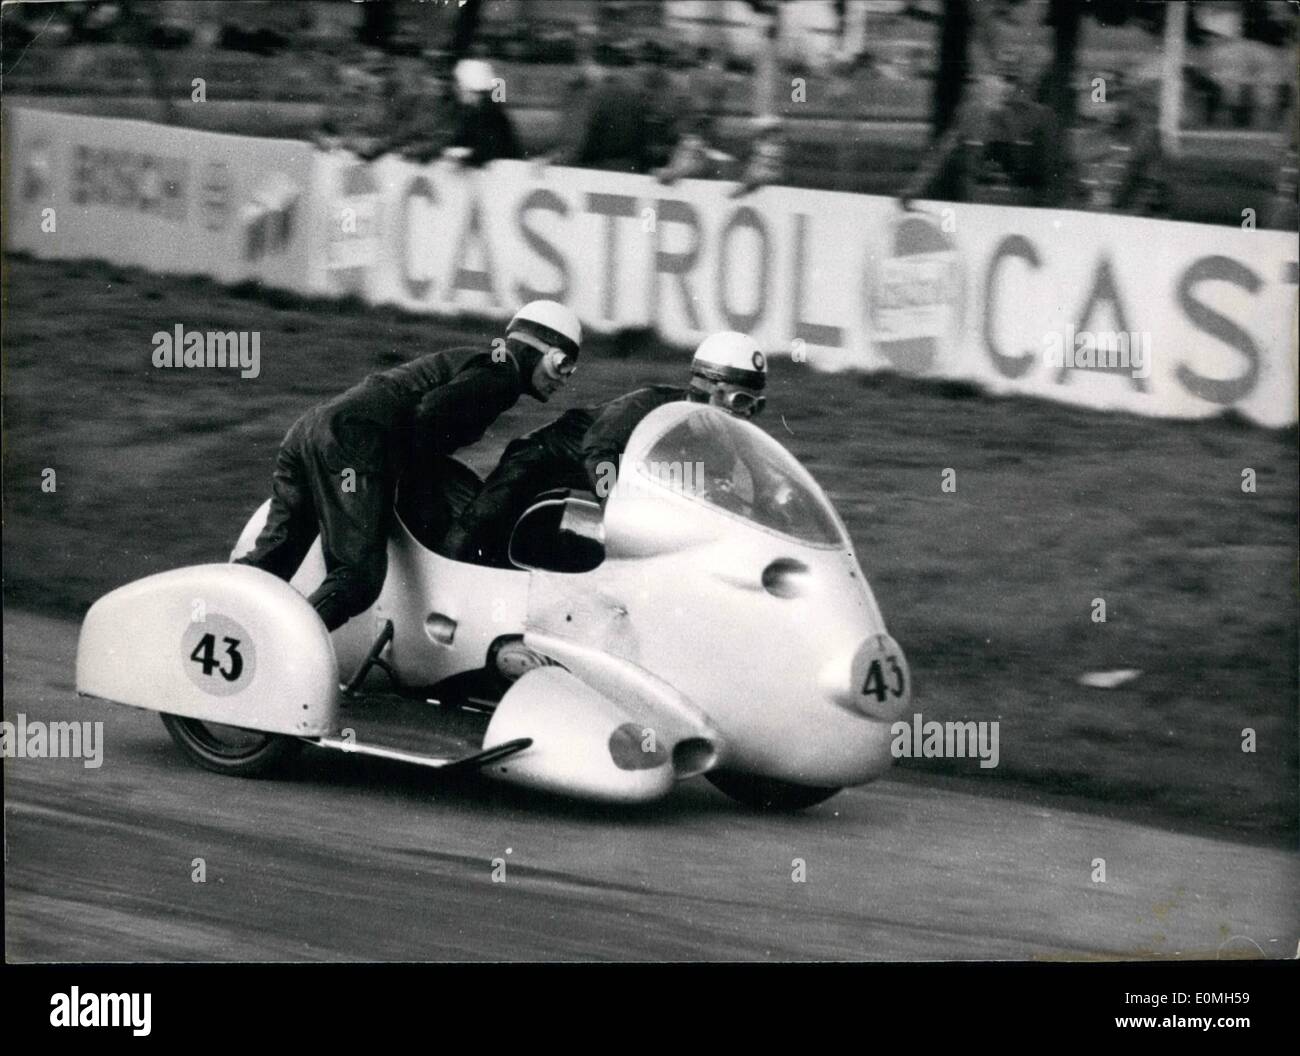 05 maggio 1955 - Il team della bavarese motori (BMW) Noll - Cron ha vinto la gara nella 500 ccm classe con una velocità media di 163,8 km/h per cerchio. La foto mostra la BMW-World-Champions-Noll-Cron in una delle curve del Hockenheim-Ring. Foto Stock